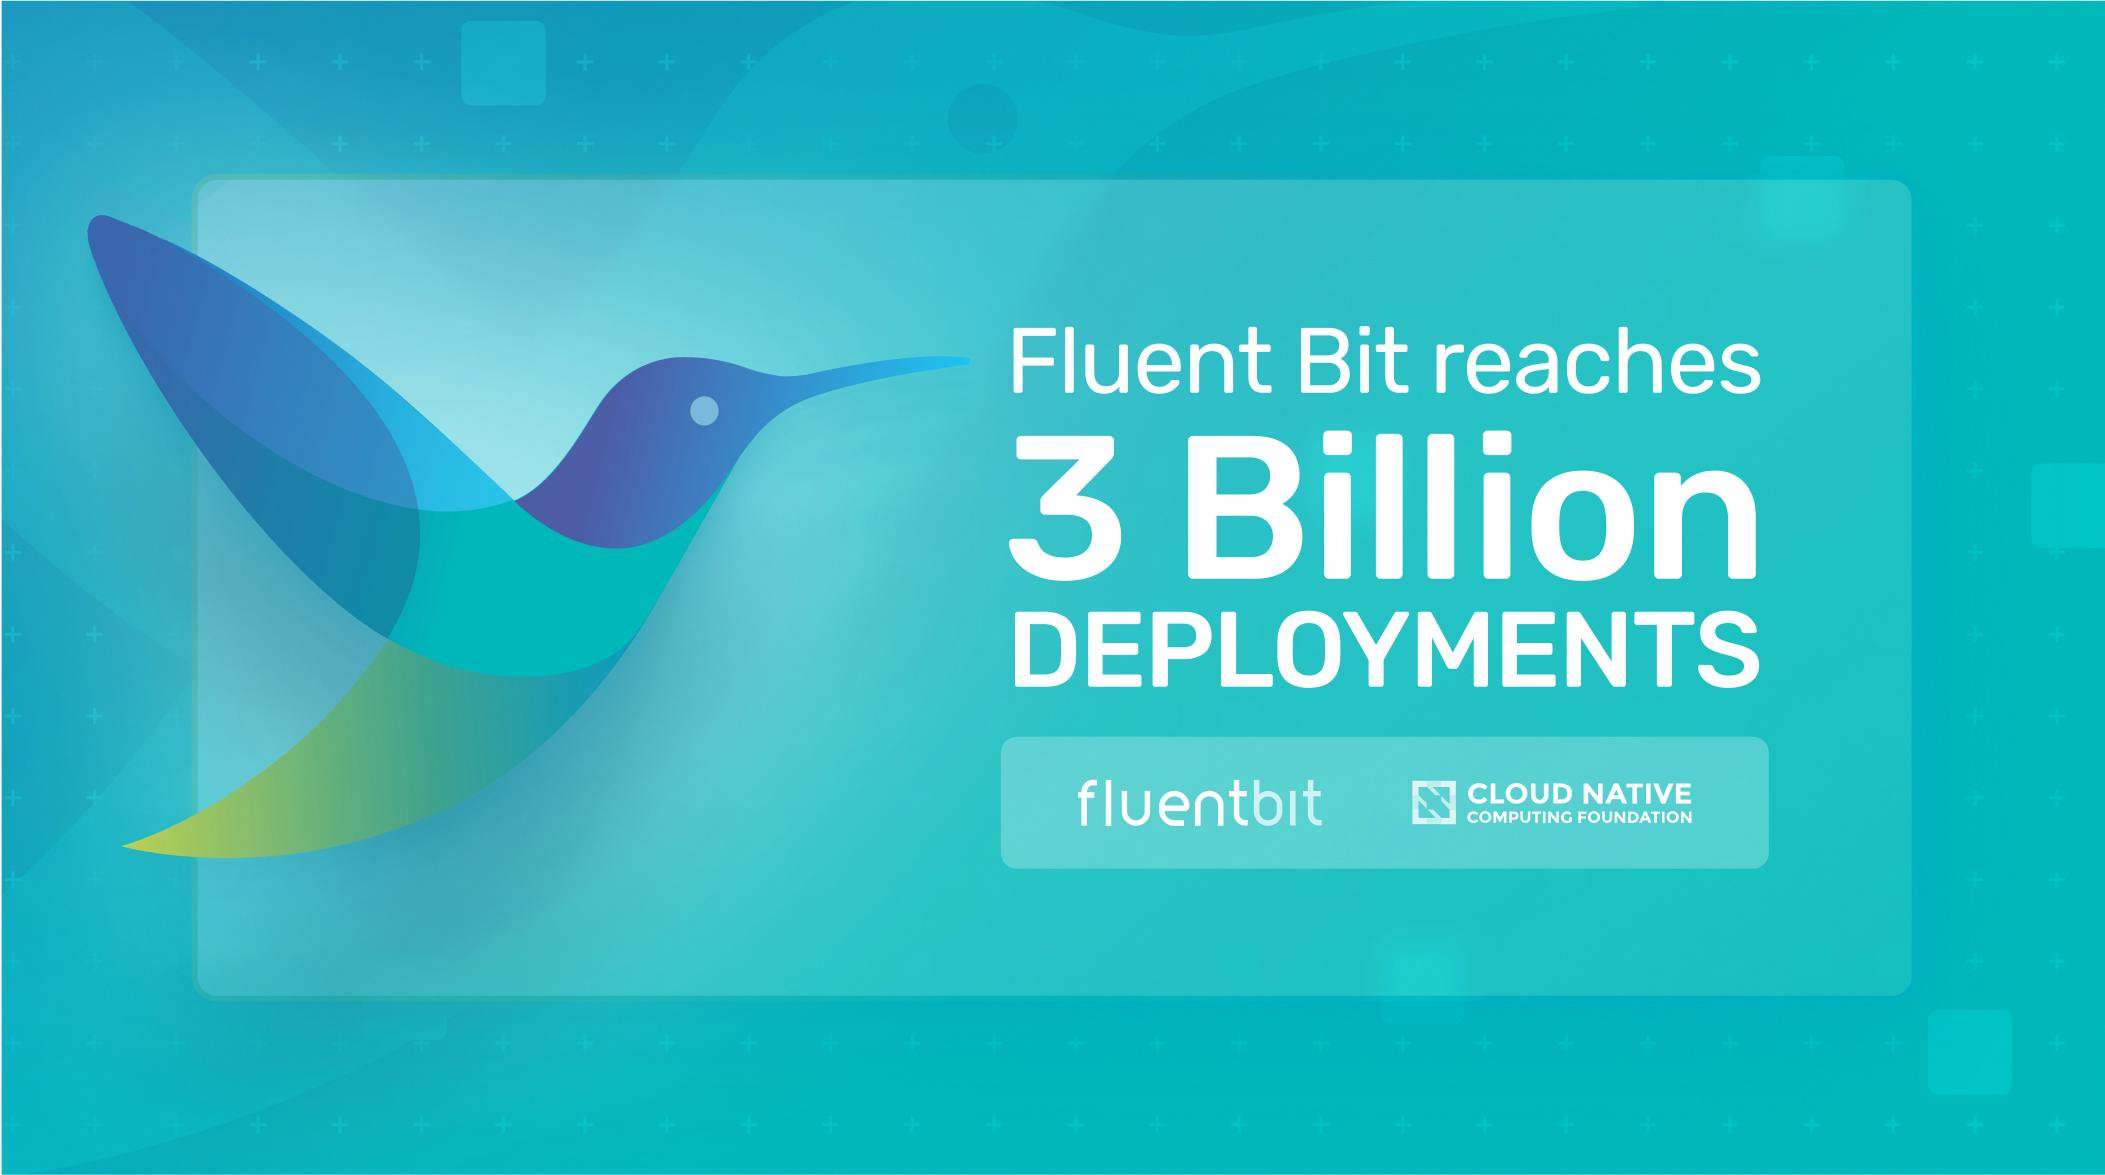 Fluent Bit reaches 3 billion deployments